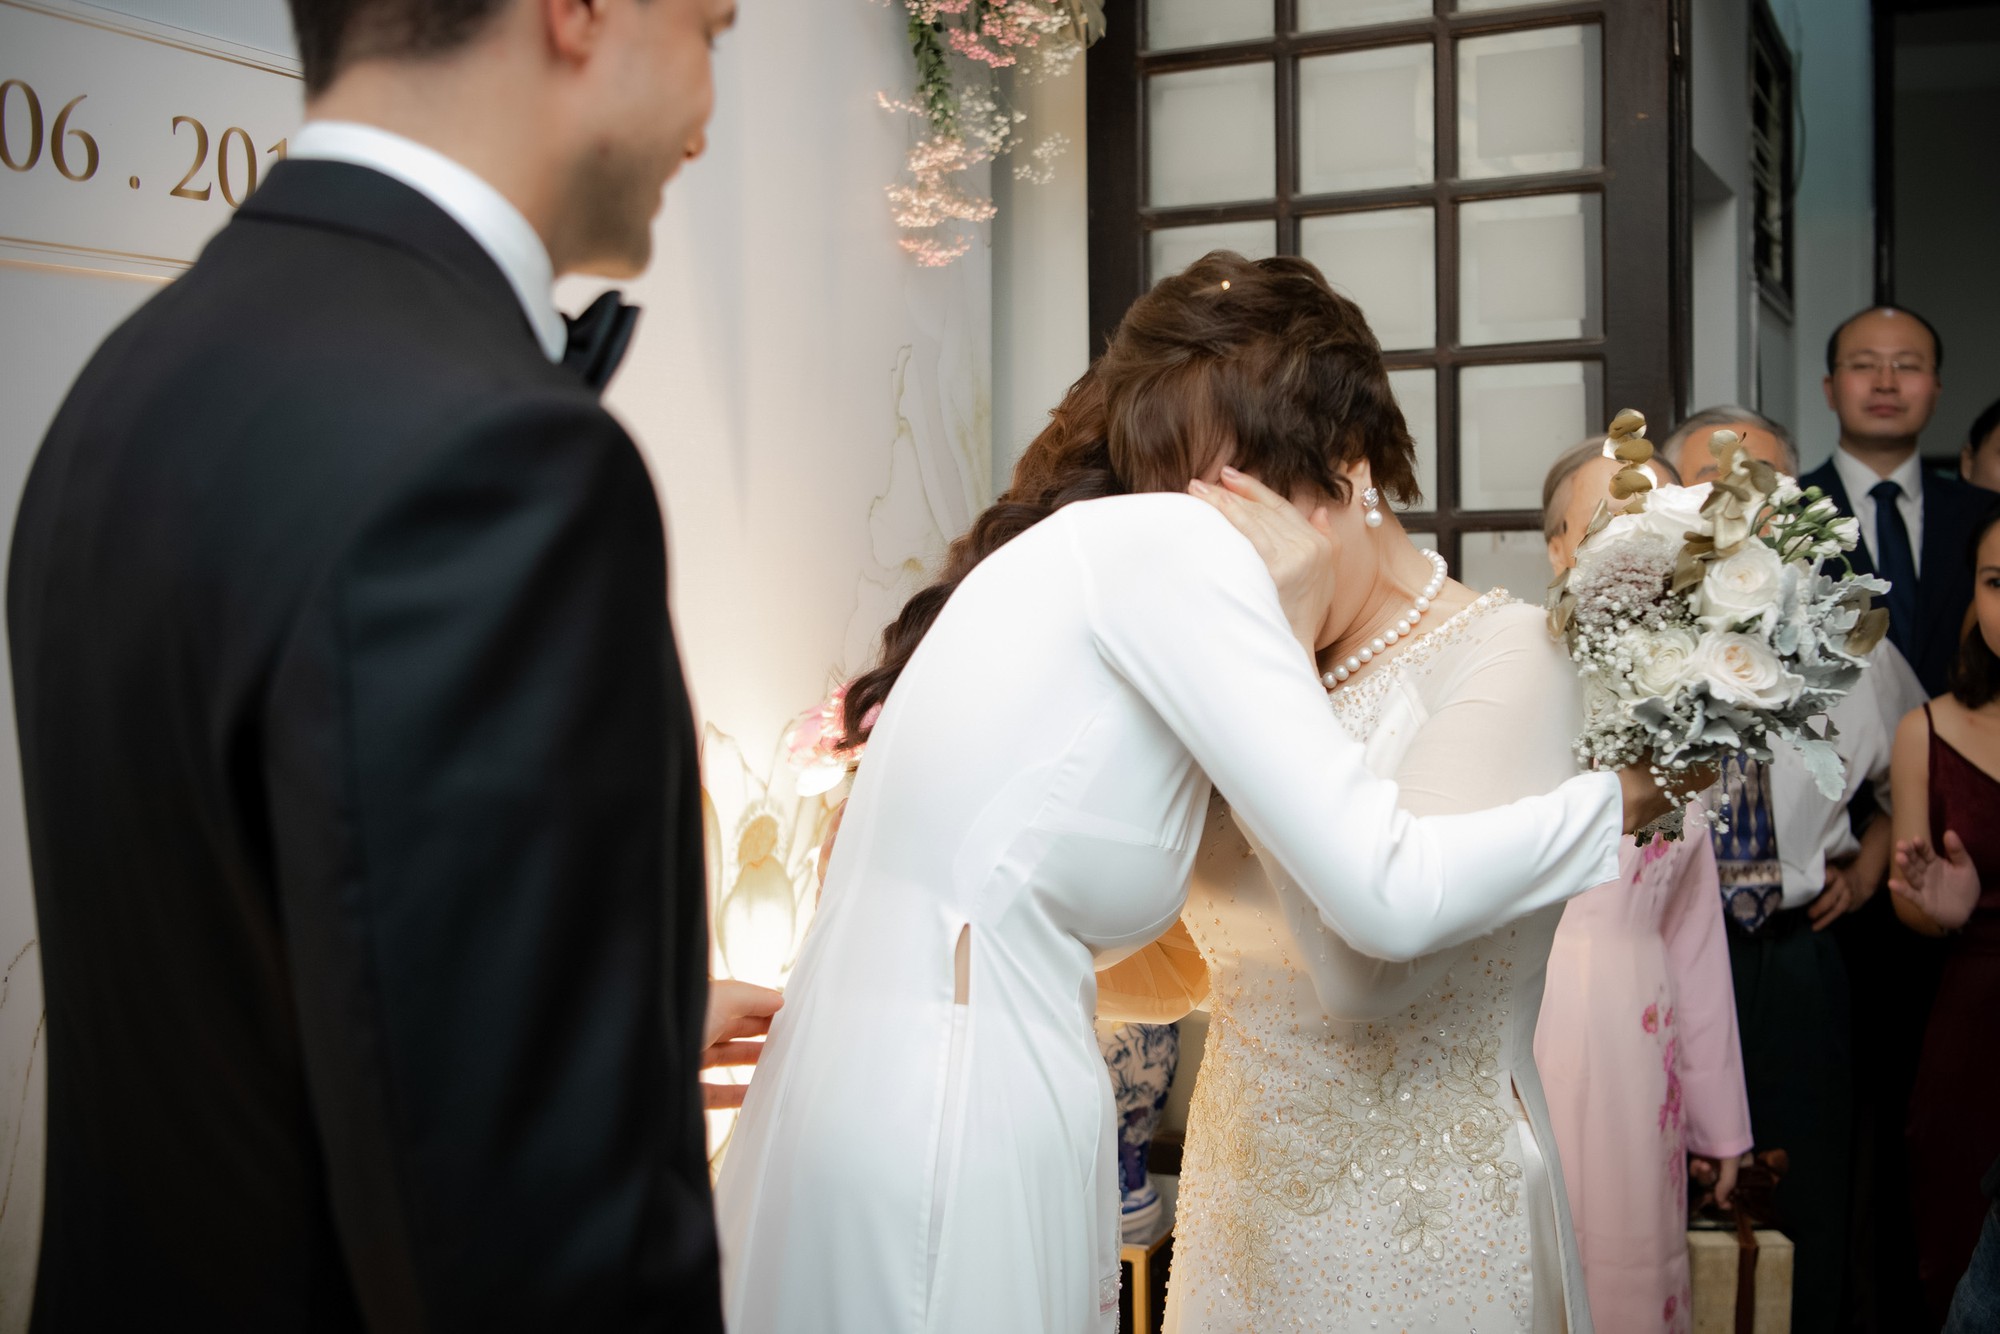 Toàn cảnh lễ đón dâu tại nhà phố cổ của siêu mẫu Phương Mai: Chú rể xuất hiện cùng đoàn xe sang, cô dâu òa khóc ôm chặt mẹ ruột  - Ảnh 10.